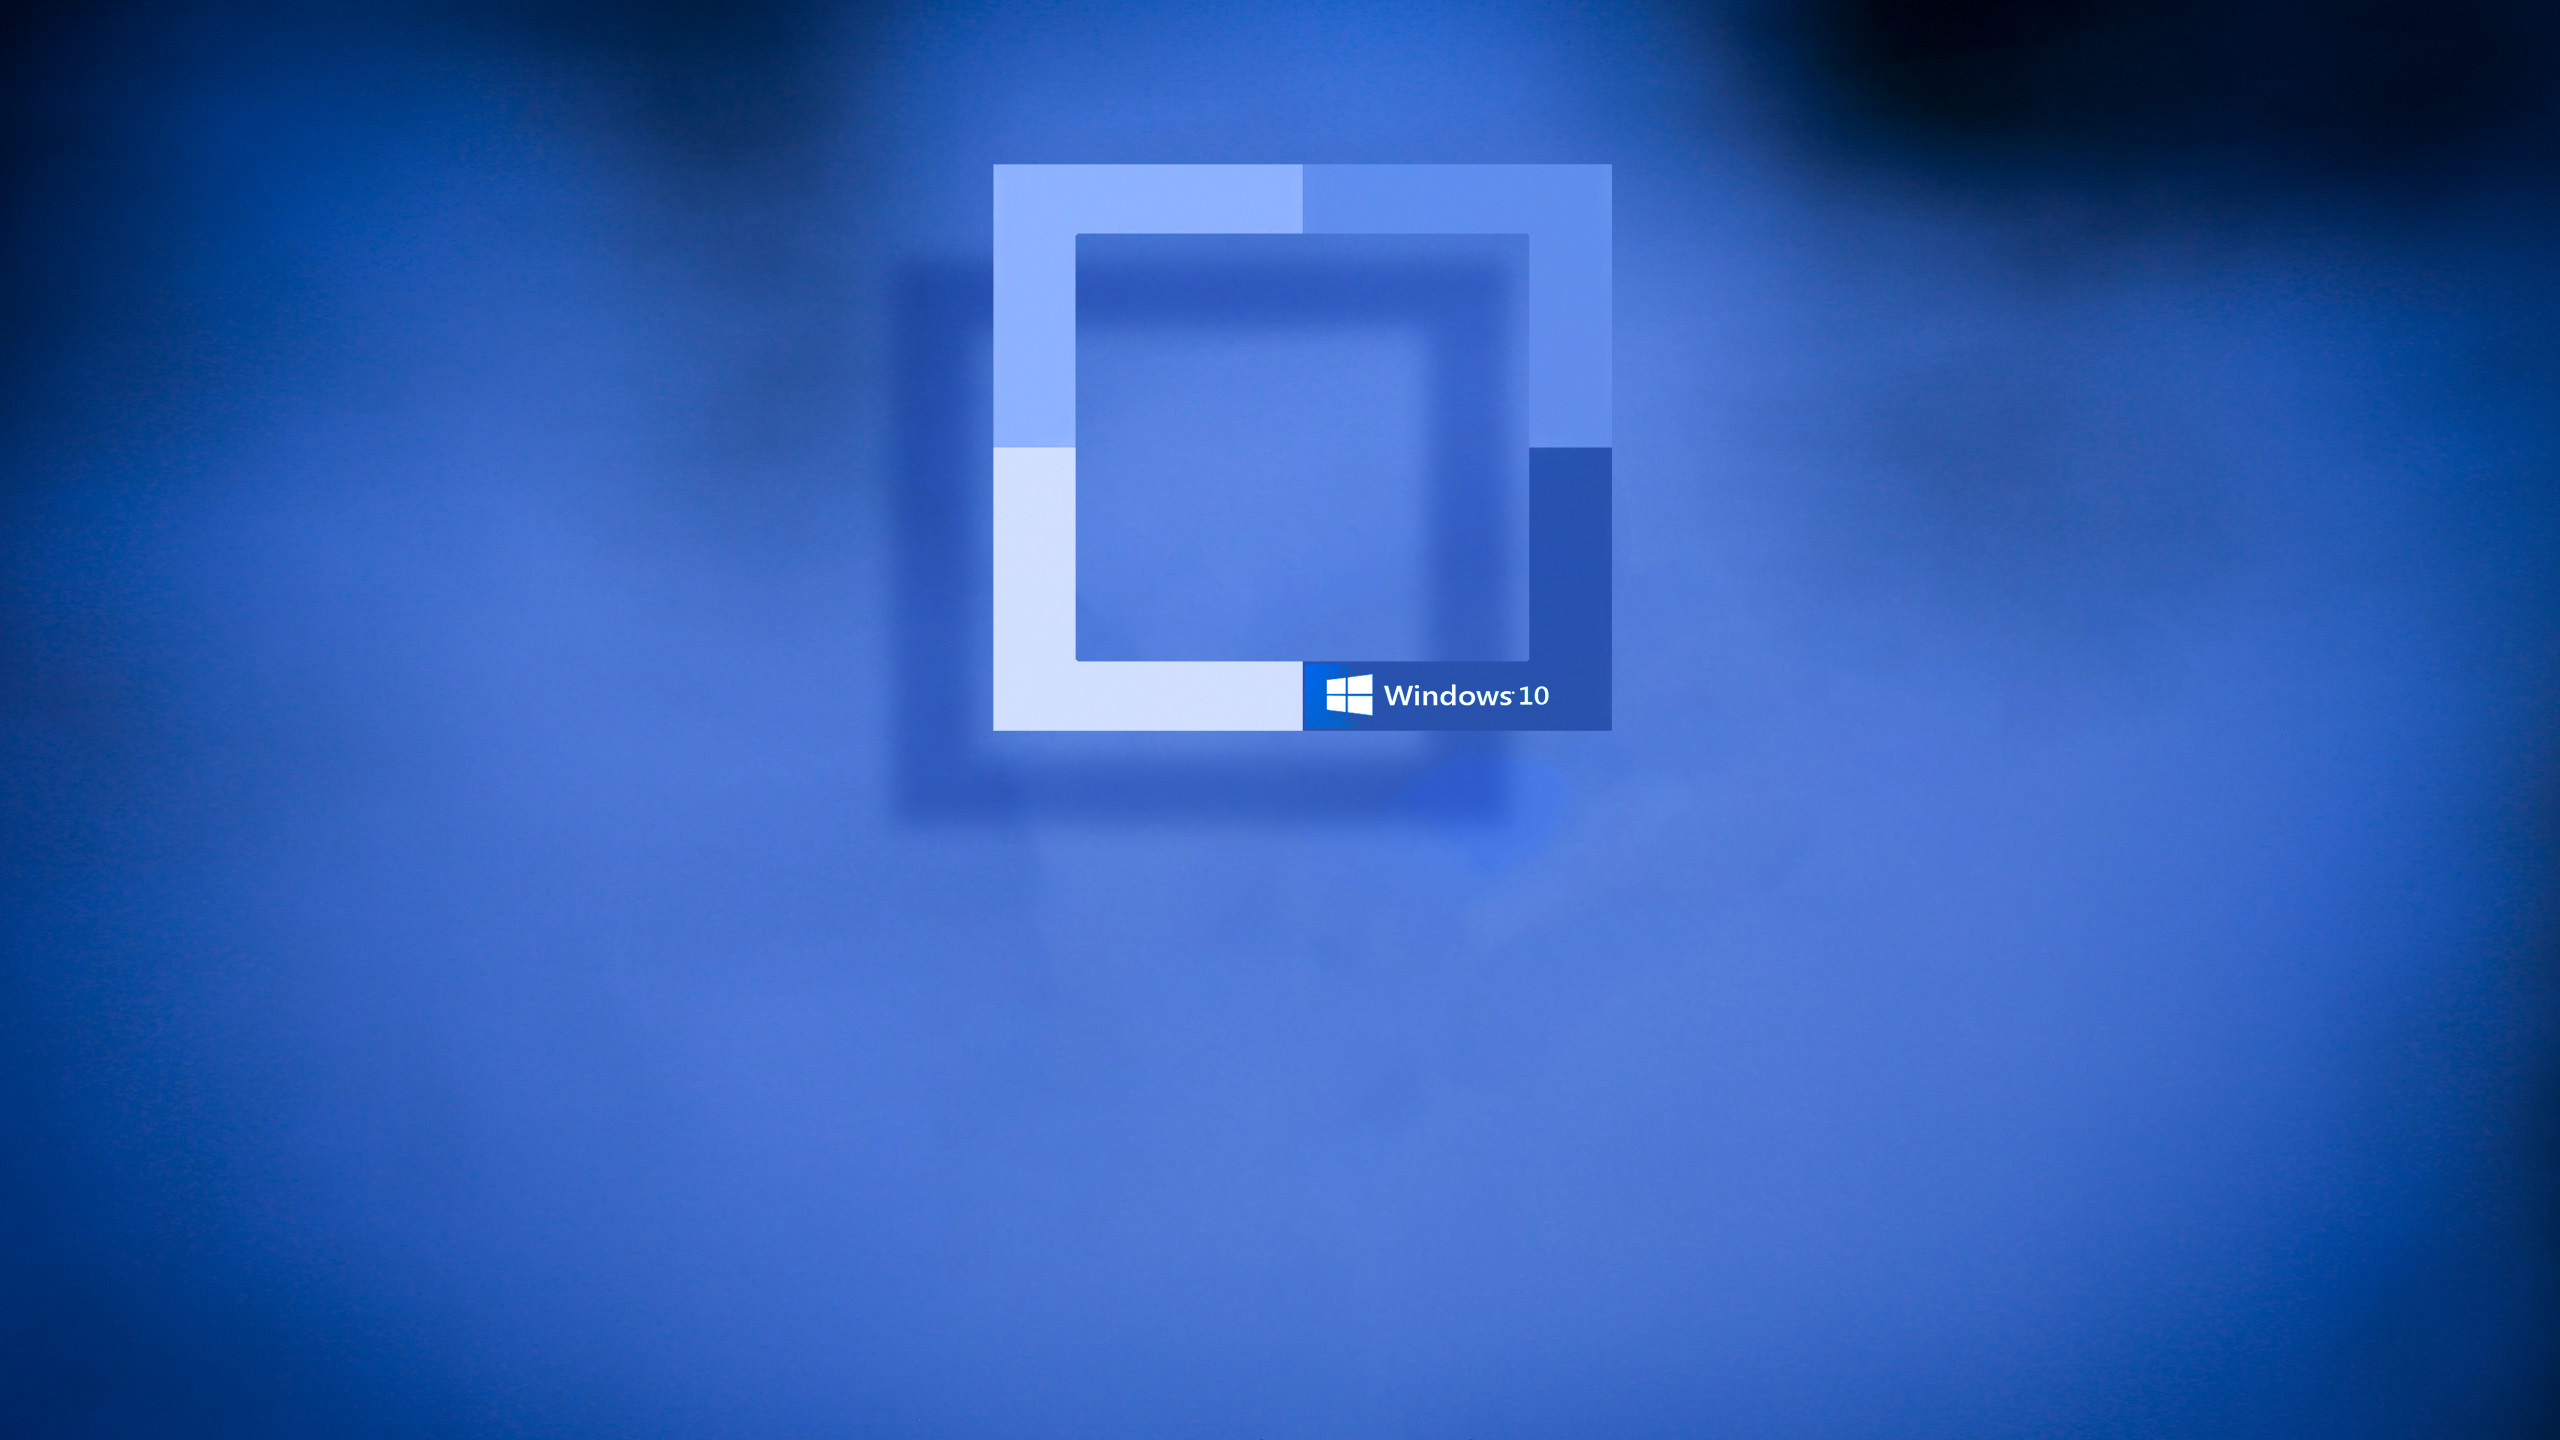 2560x1440 Windows 10 Desktop Background.